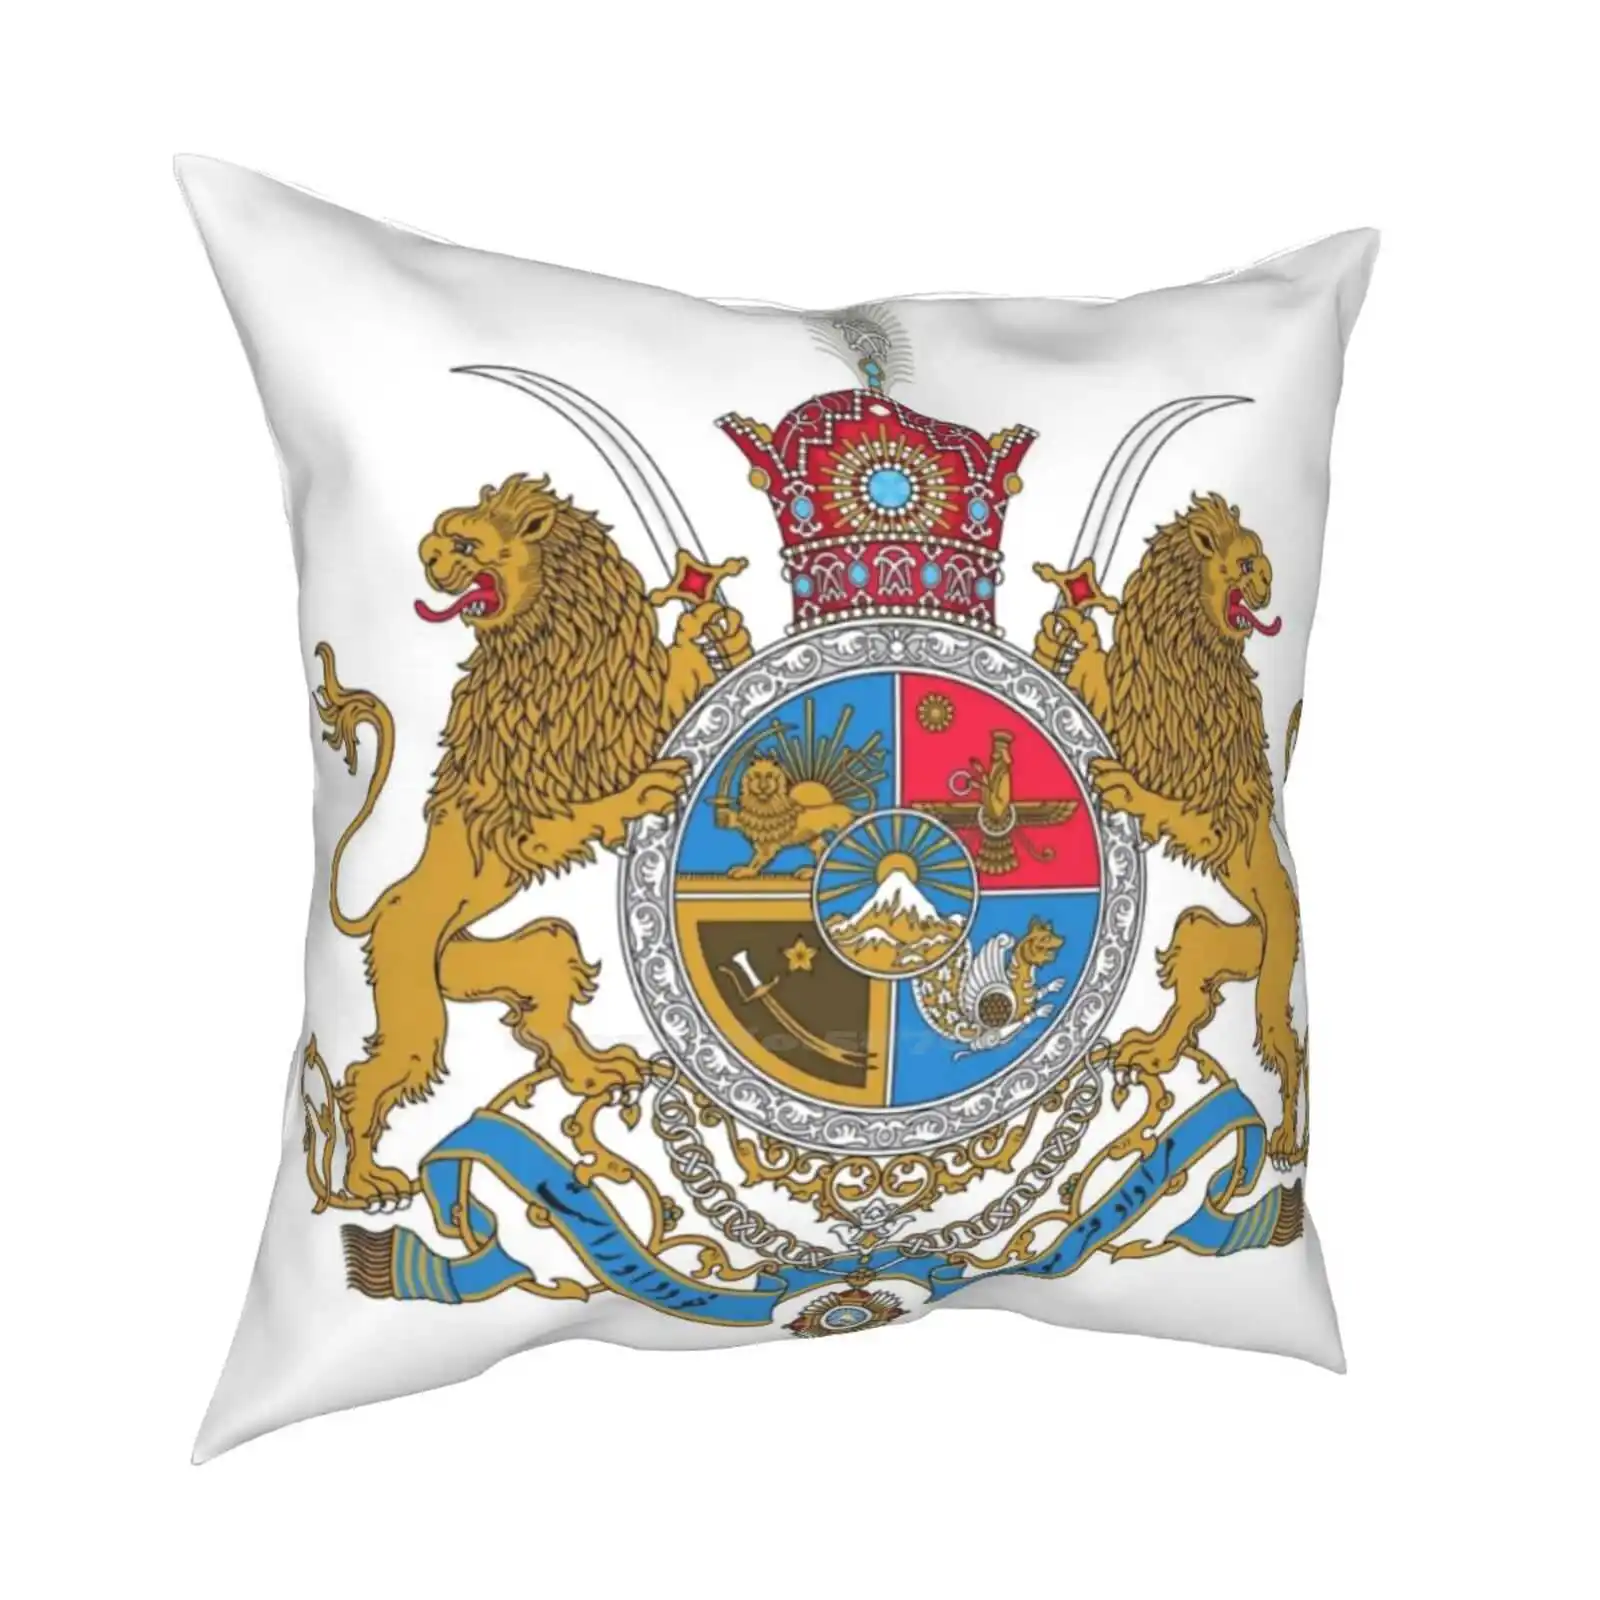 Наволочка с гербом иранского шахса герб имперации льва шаха короны символа Азии